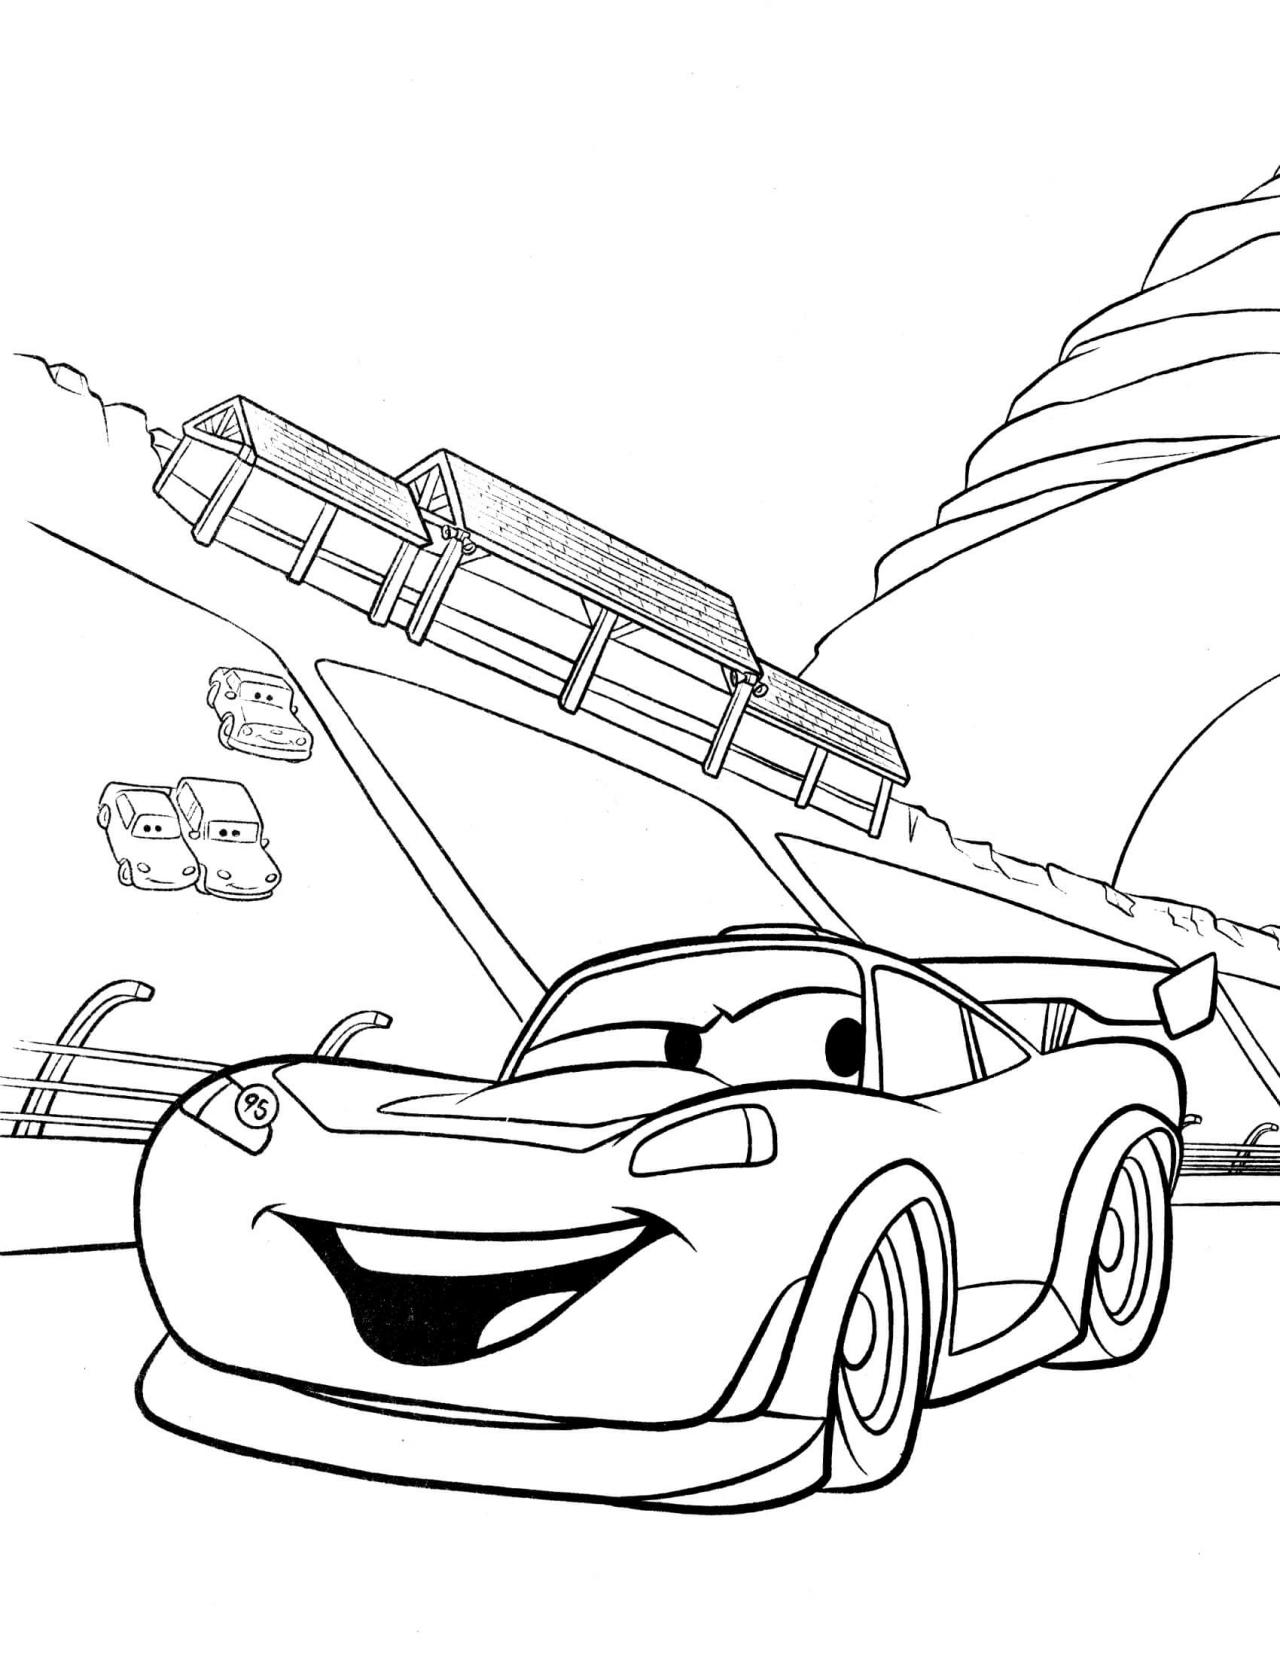 رسومات سيارات للتلوين , رسومات لتنمية عقل الطفل صباحيات